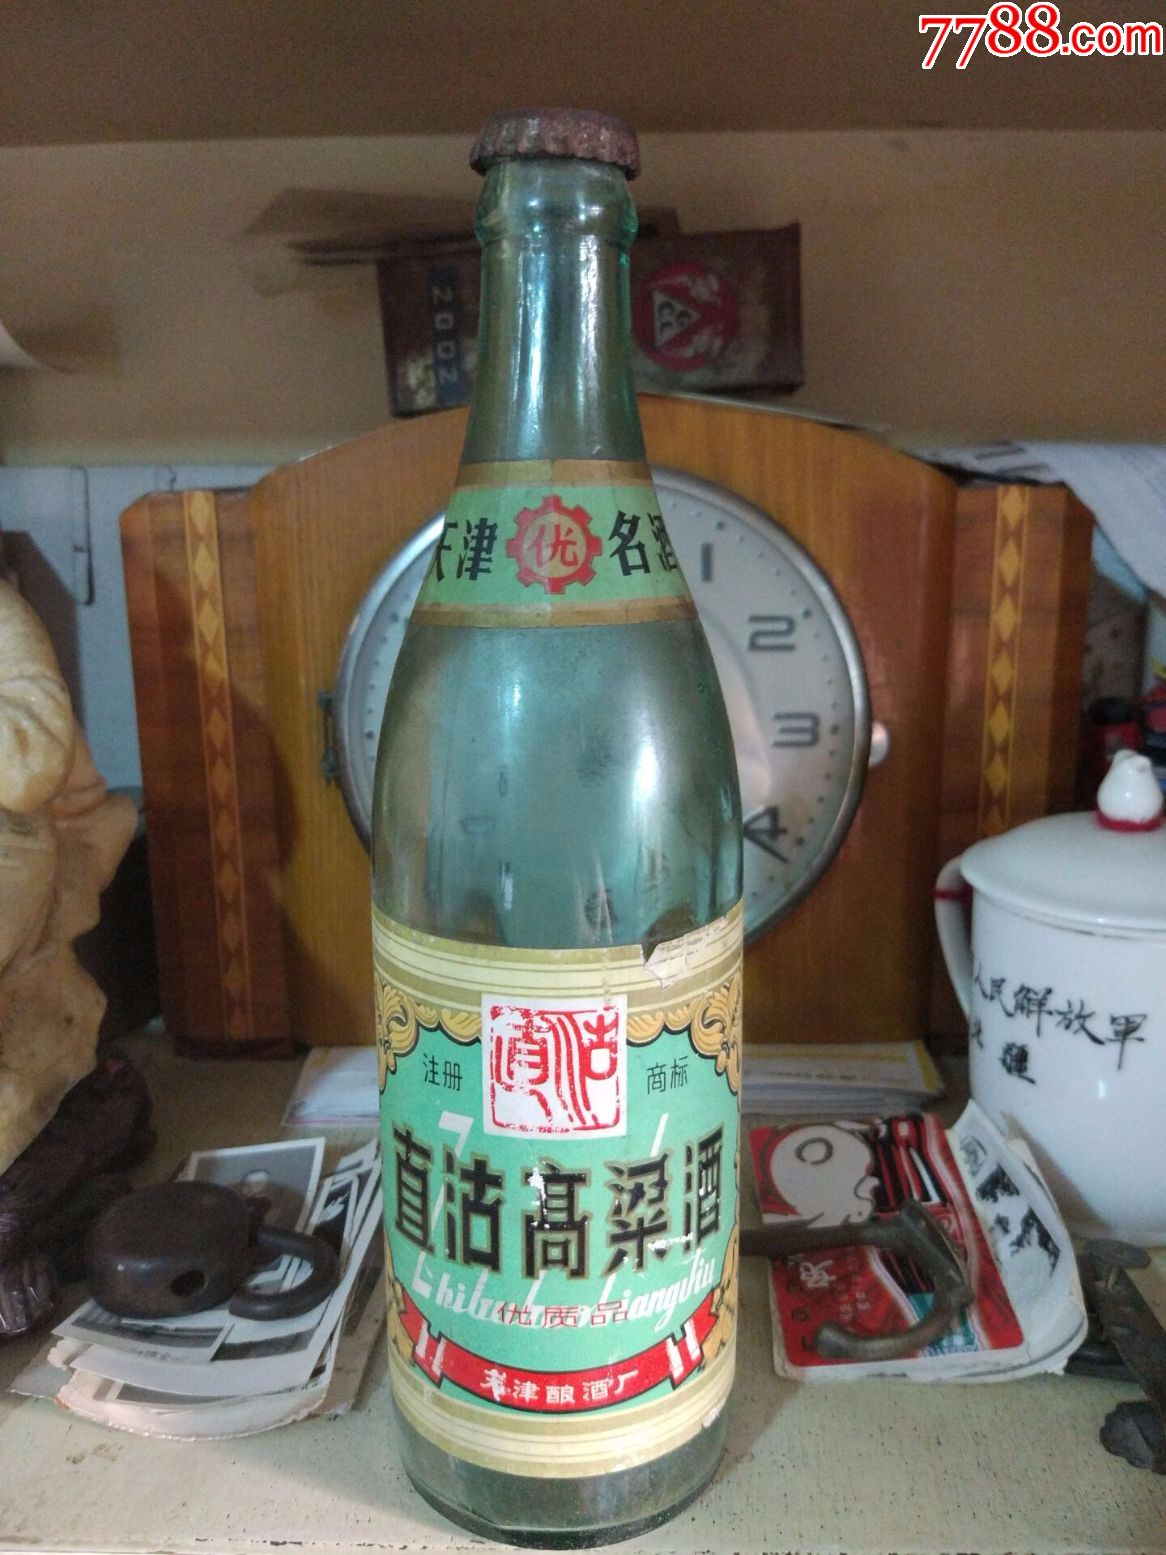 早期天津名酒《直沽高粱酒》酒瓶,铁盖,标签完整